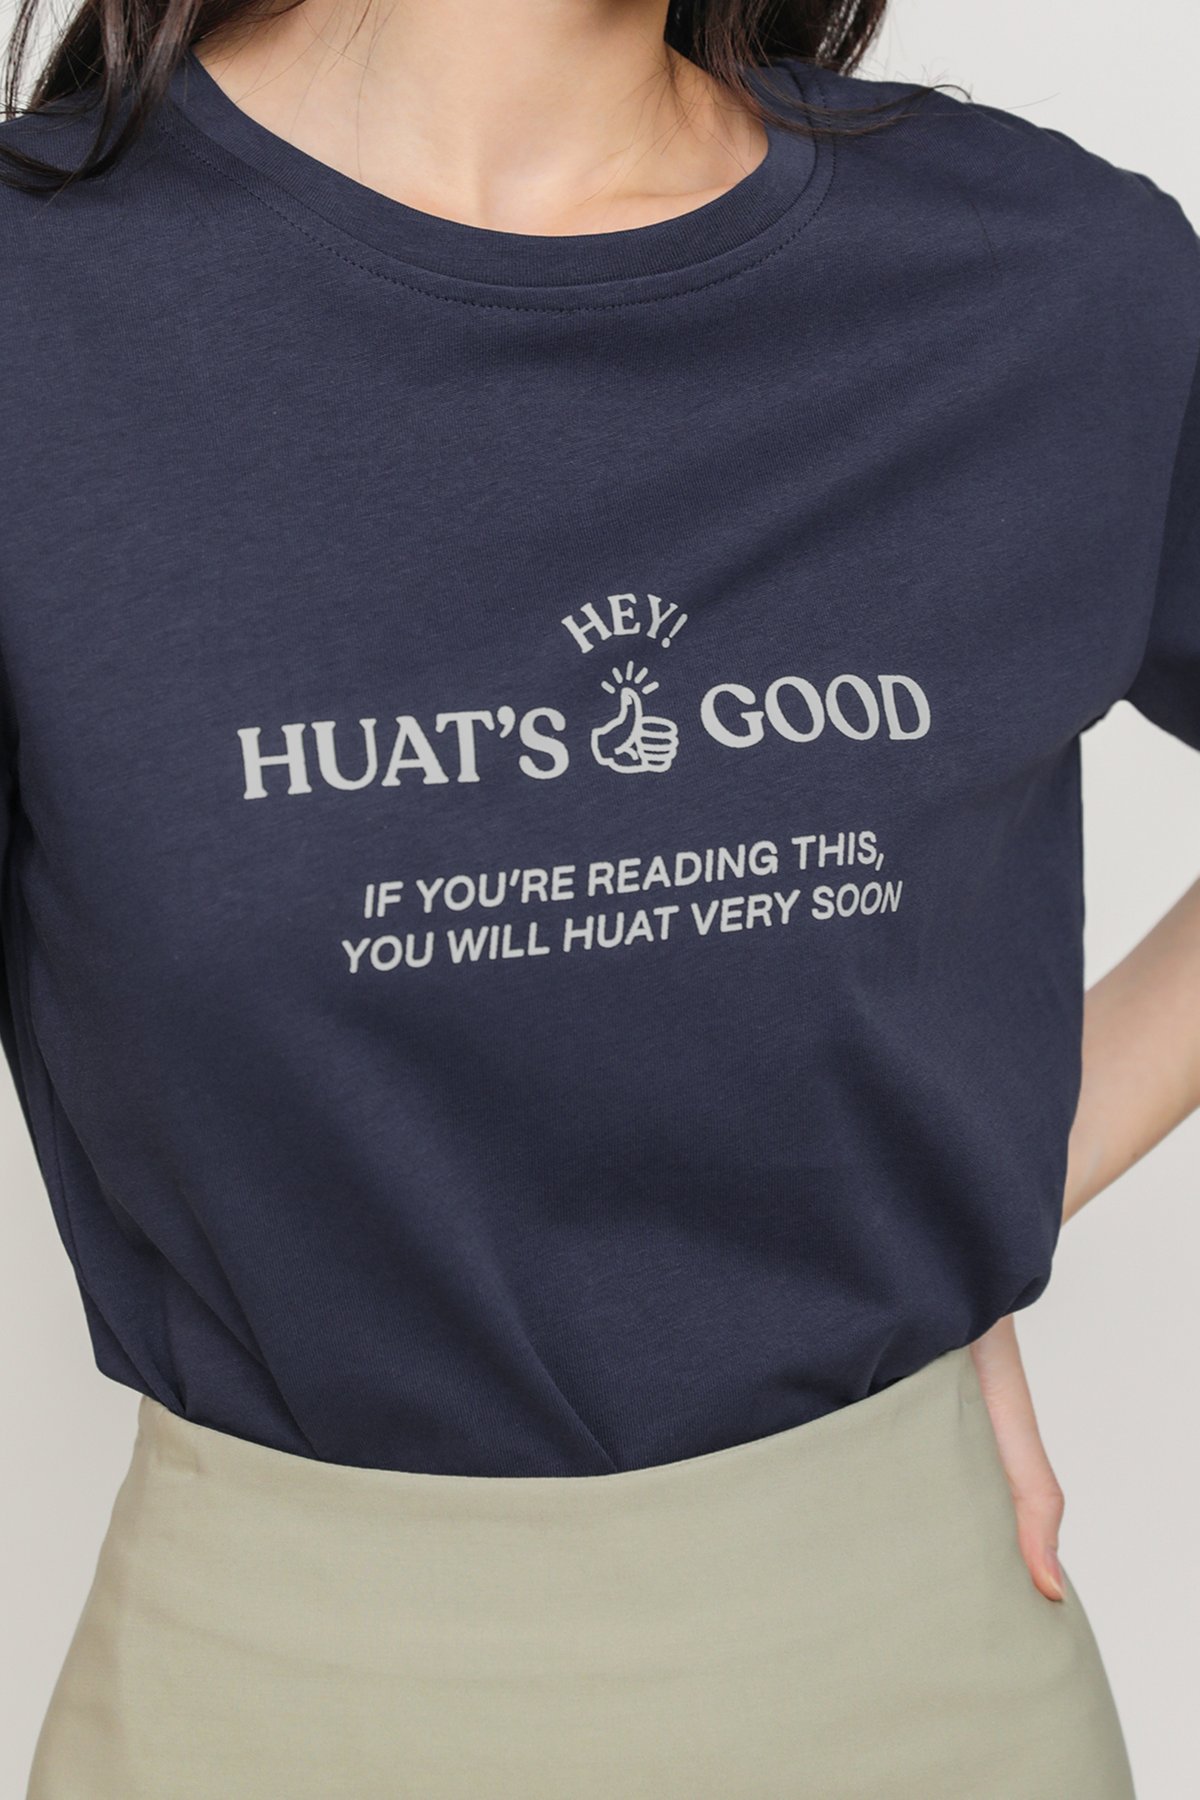 Huat's Good Tee (Navy)